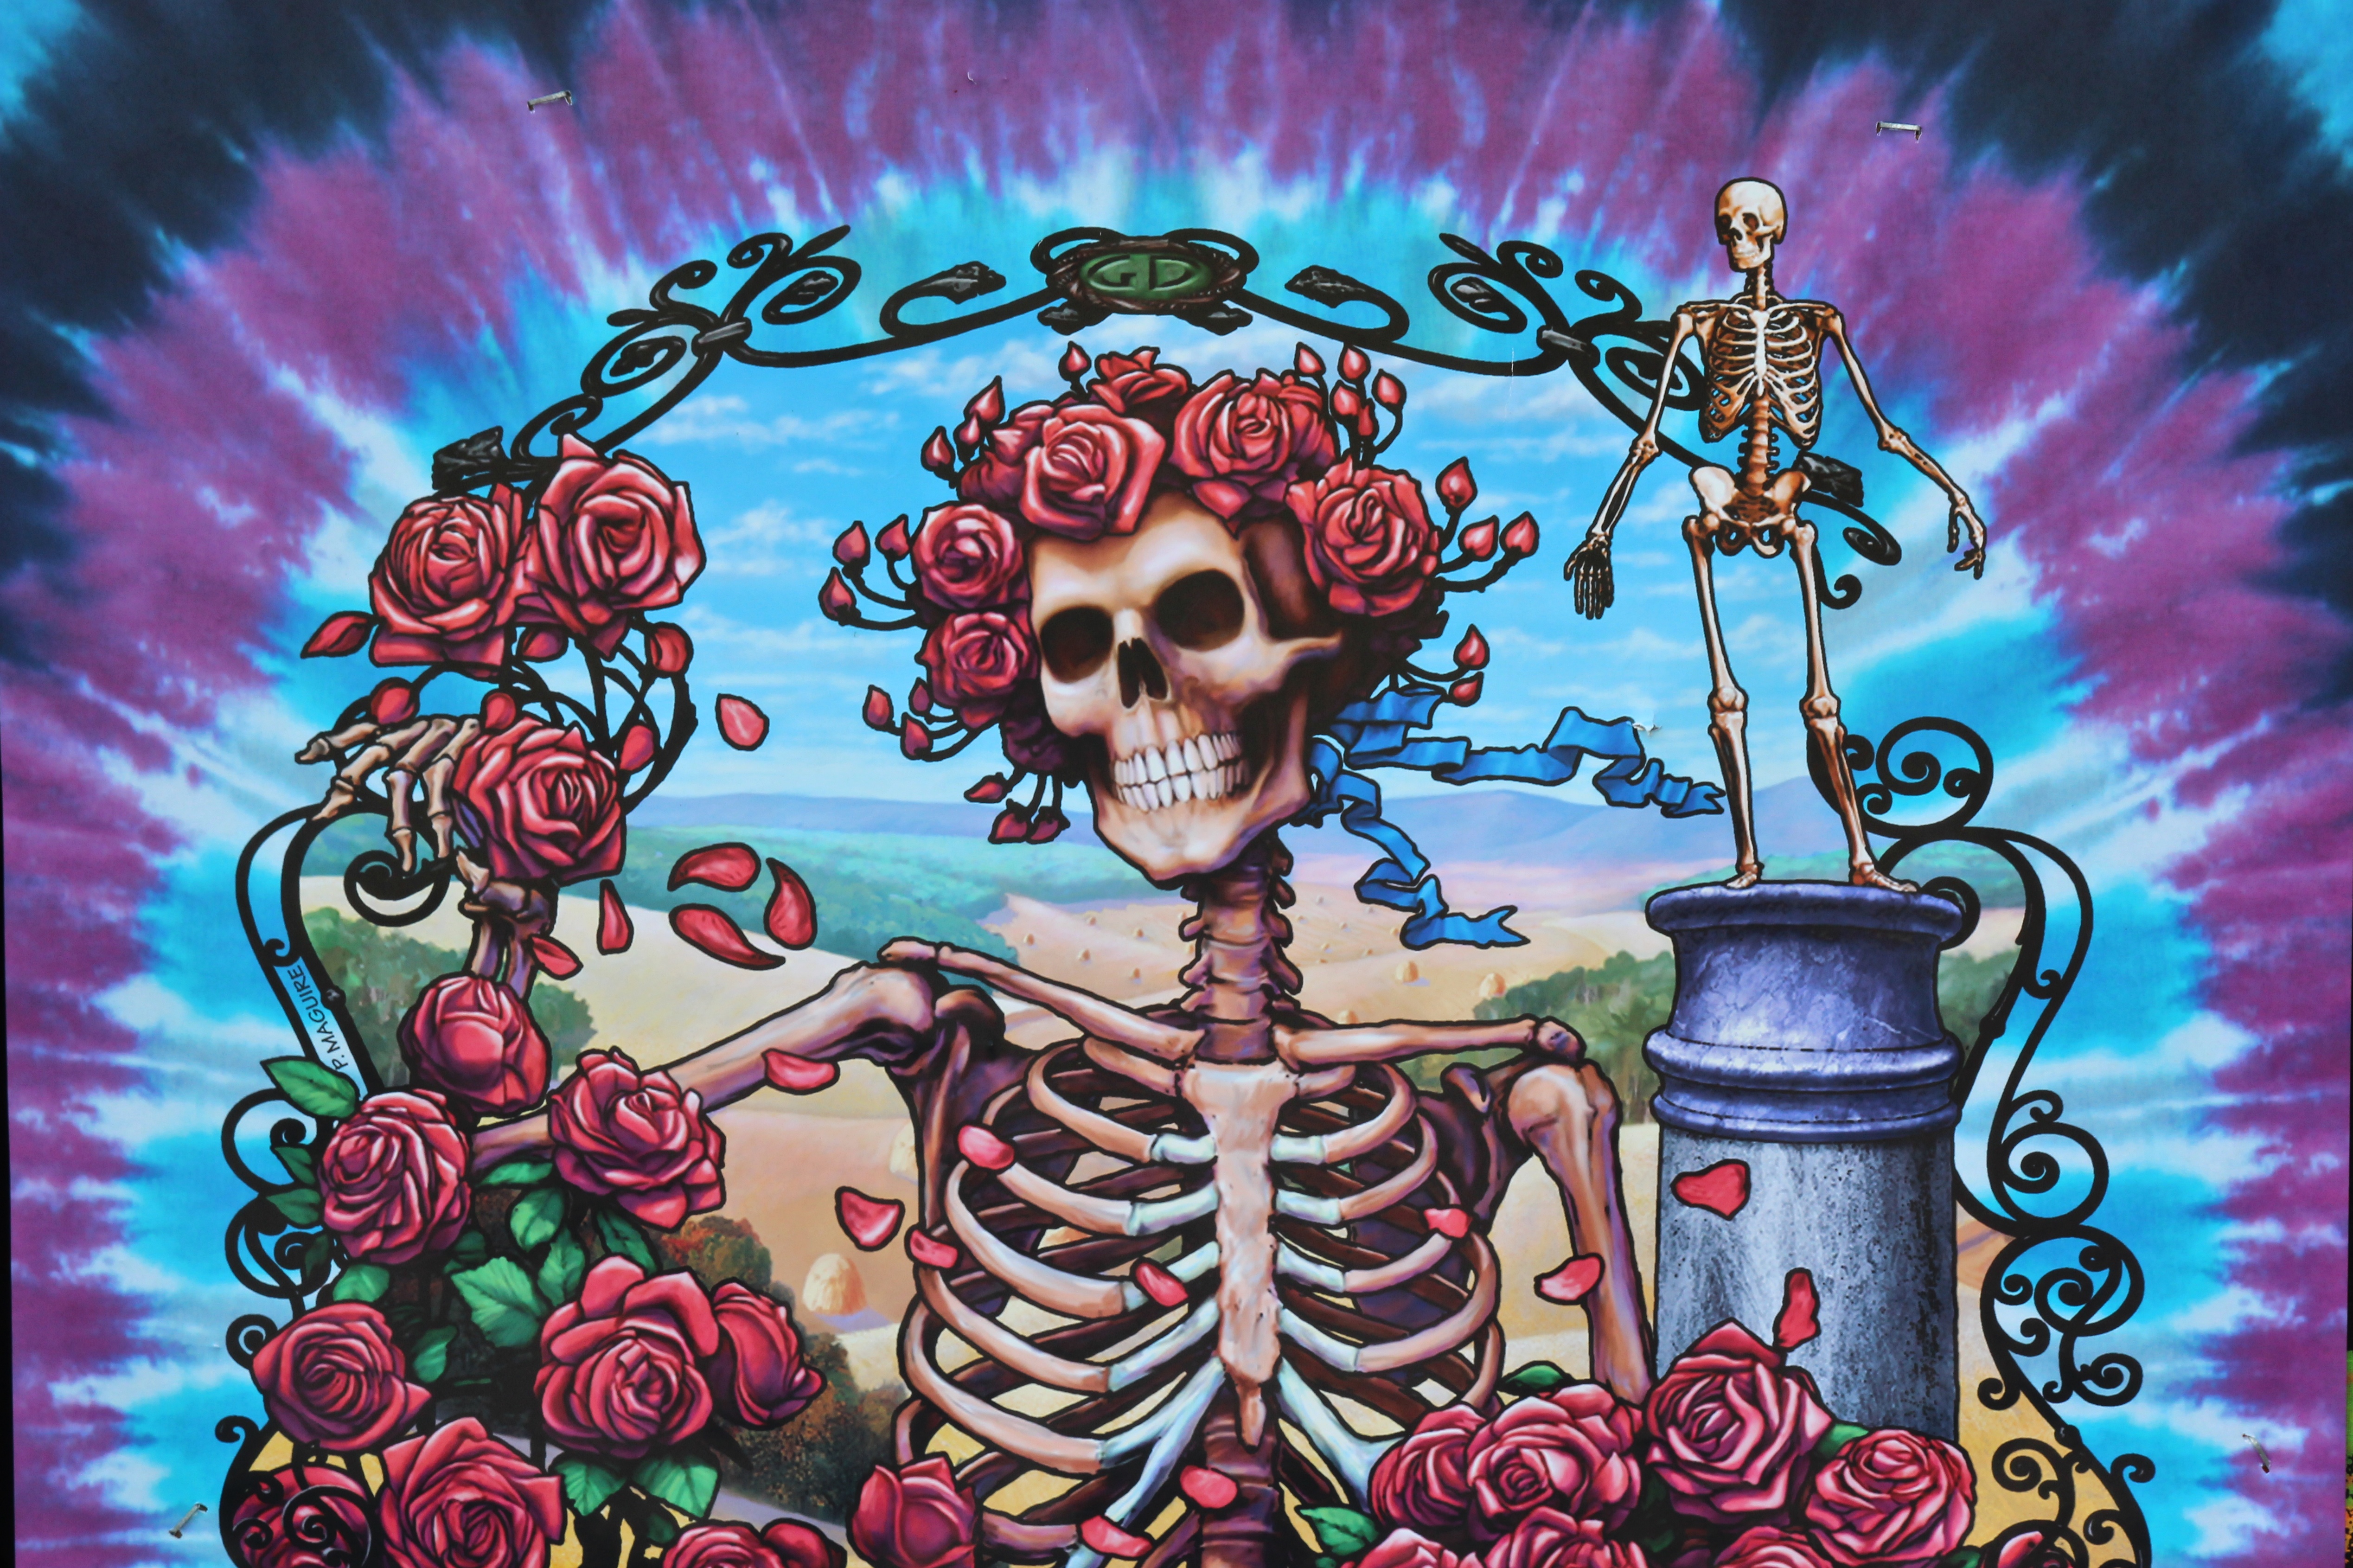 Grateful Dead album - Wikipedia